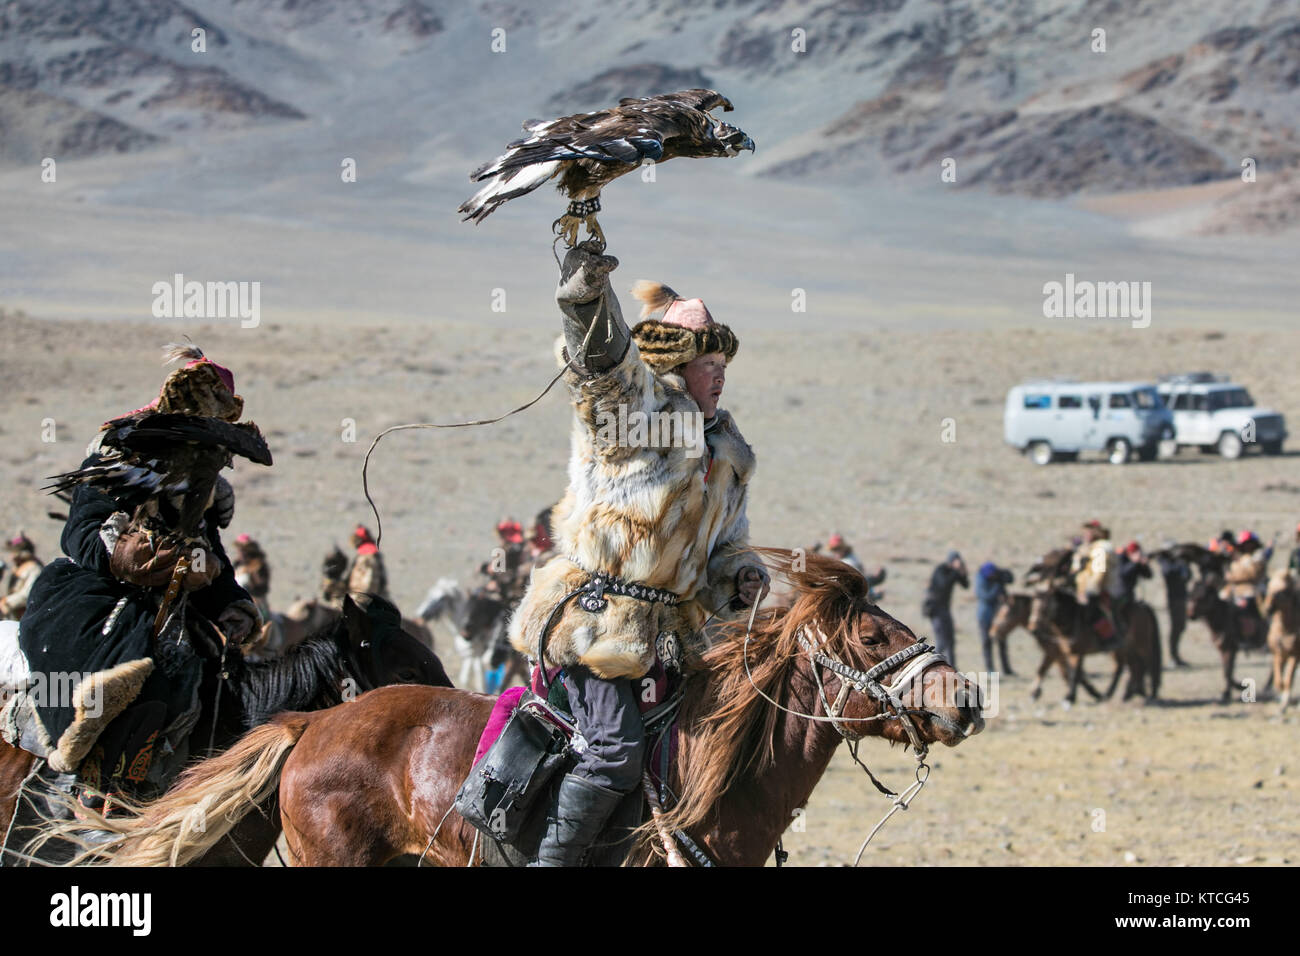 Eagle kazakh à l'hunter Festival Golden Eagle en Mongolie Banque D'Images